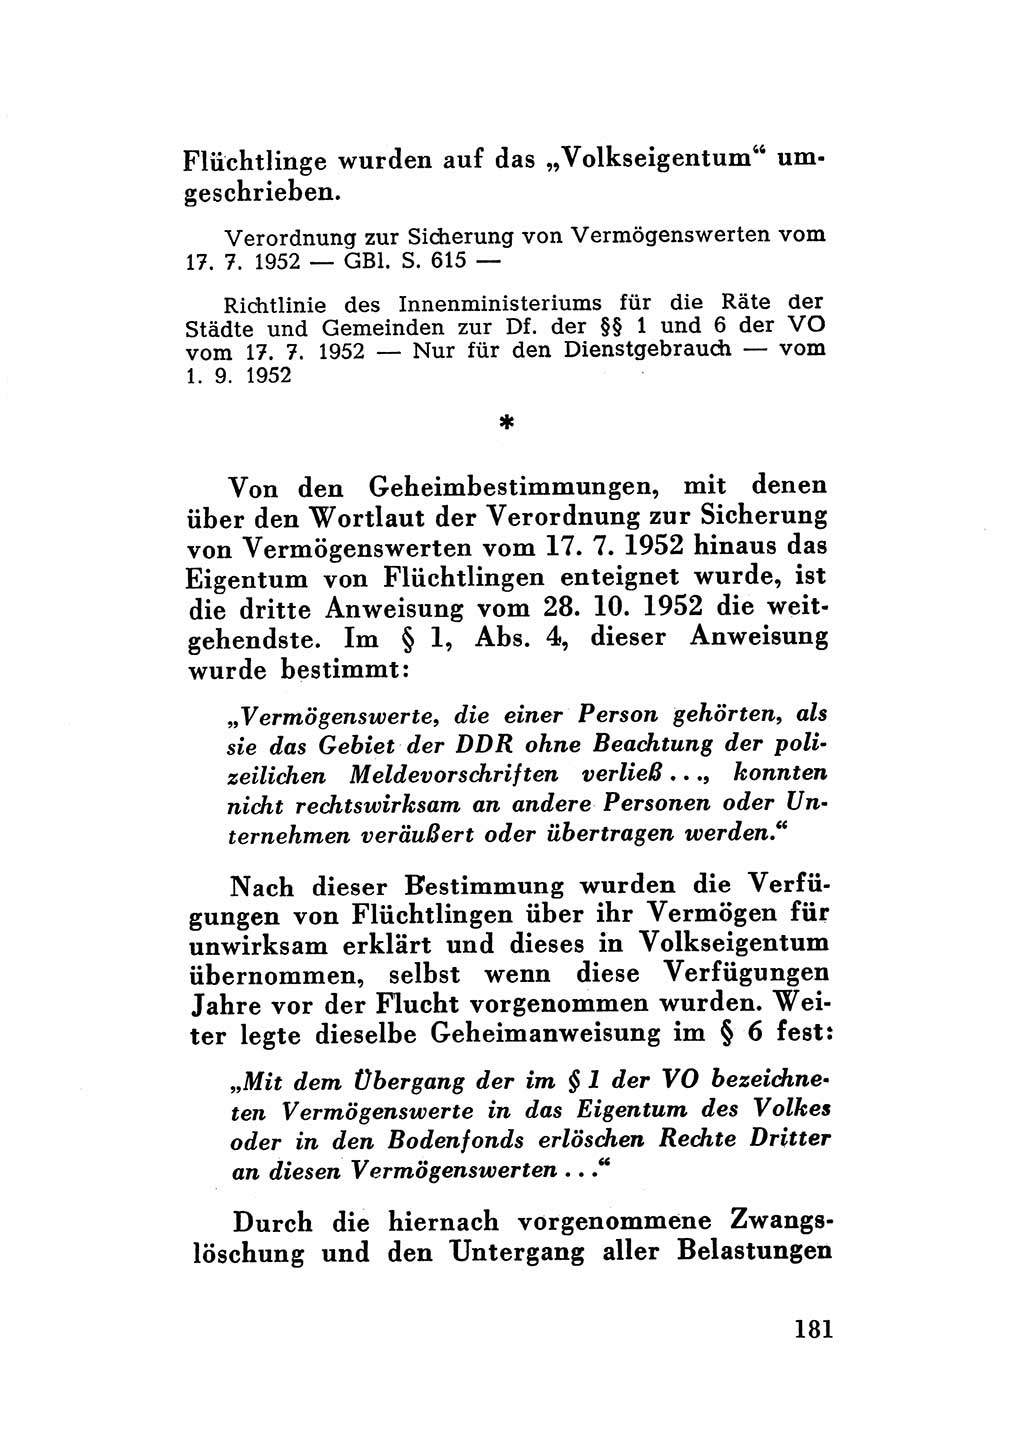 Katalog des Unrechts, Untersuchungsausschuß Freiheitlicher Juristen (UfJ) [Bundesrepublik Deutschland (BRD)] 1956, Seite 181 (Kat. UnR. UfJ BRD 1956, S. 181)